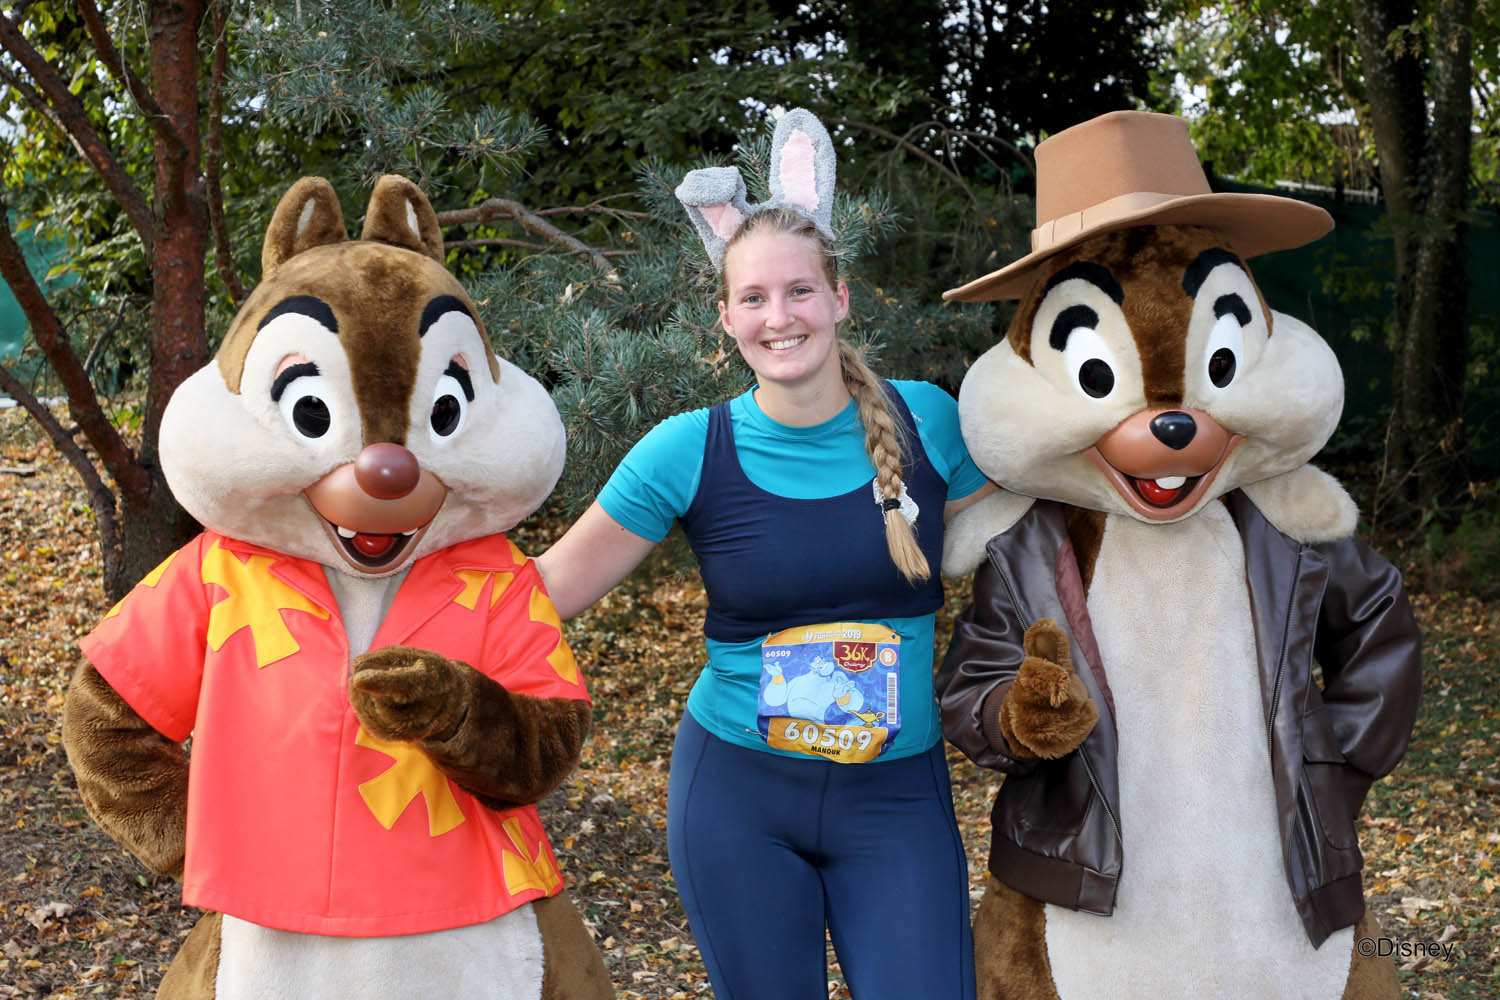 Photopass met Knabbel en Babbel of Chip and Dale tijdens de halve marathon in Disneyland Paris.